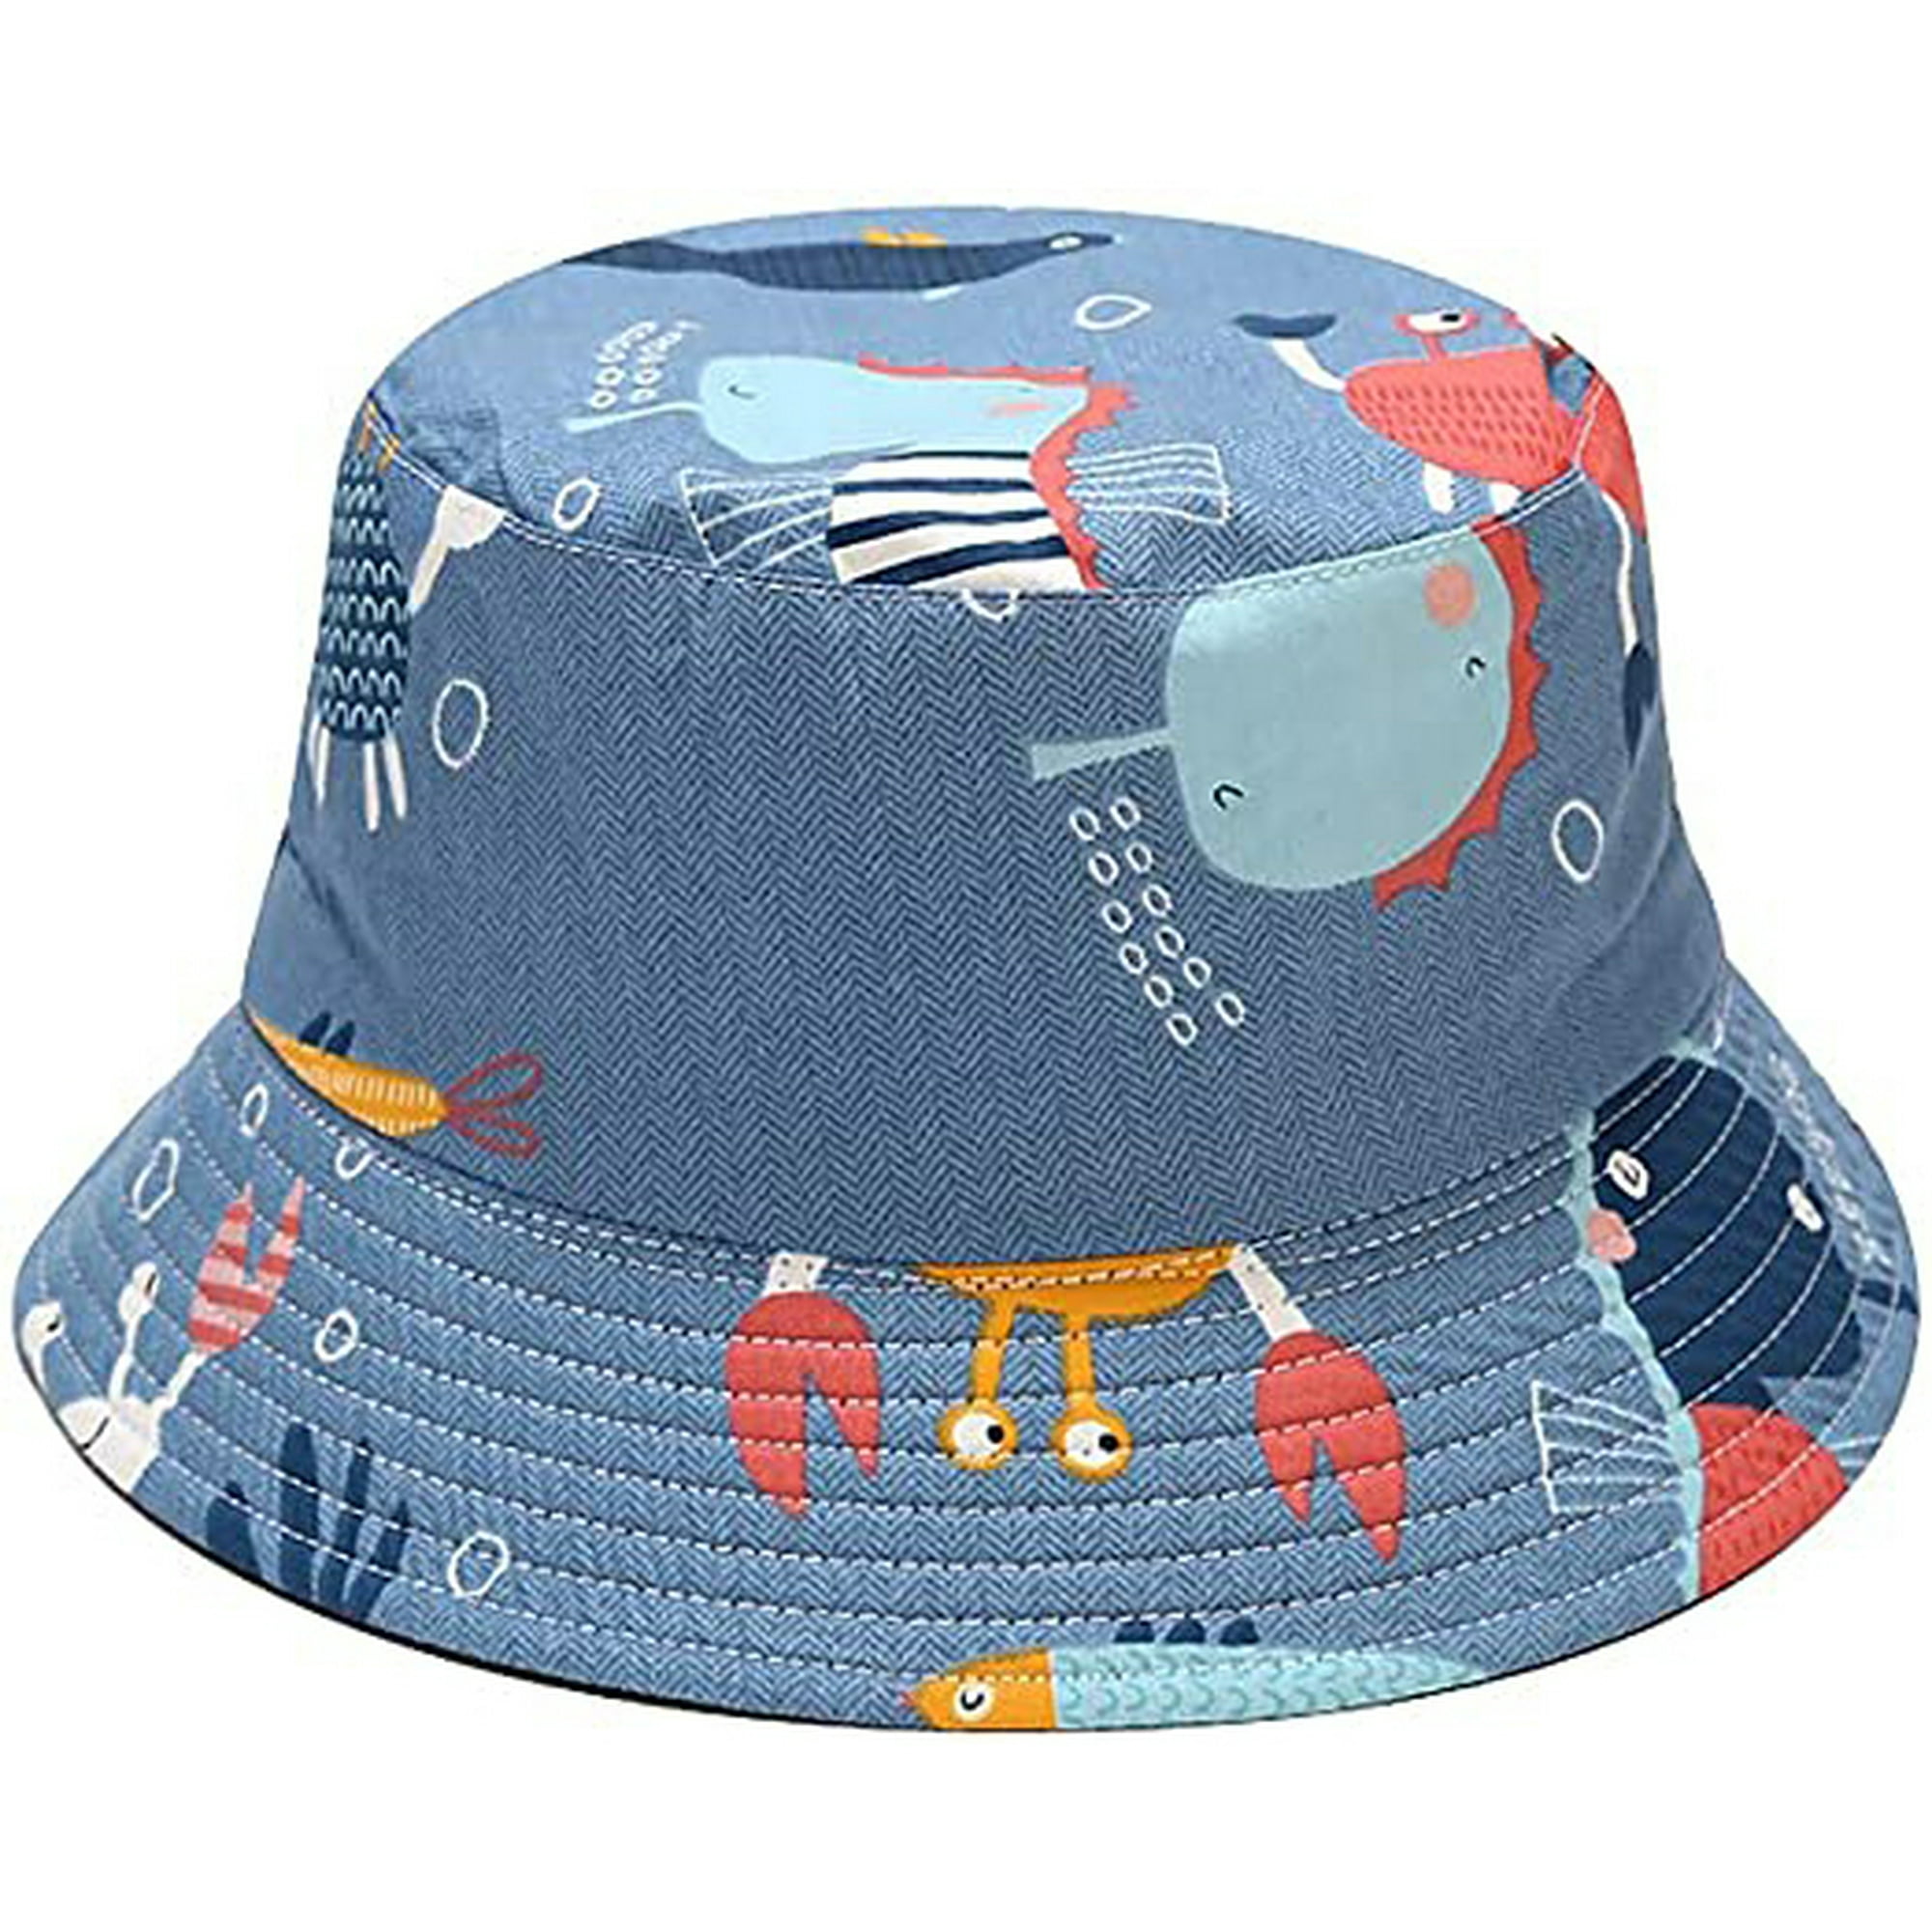 Sombreros de pescador con estampado de ballena y tiburón azul de